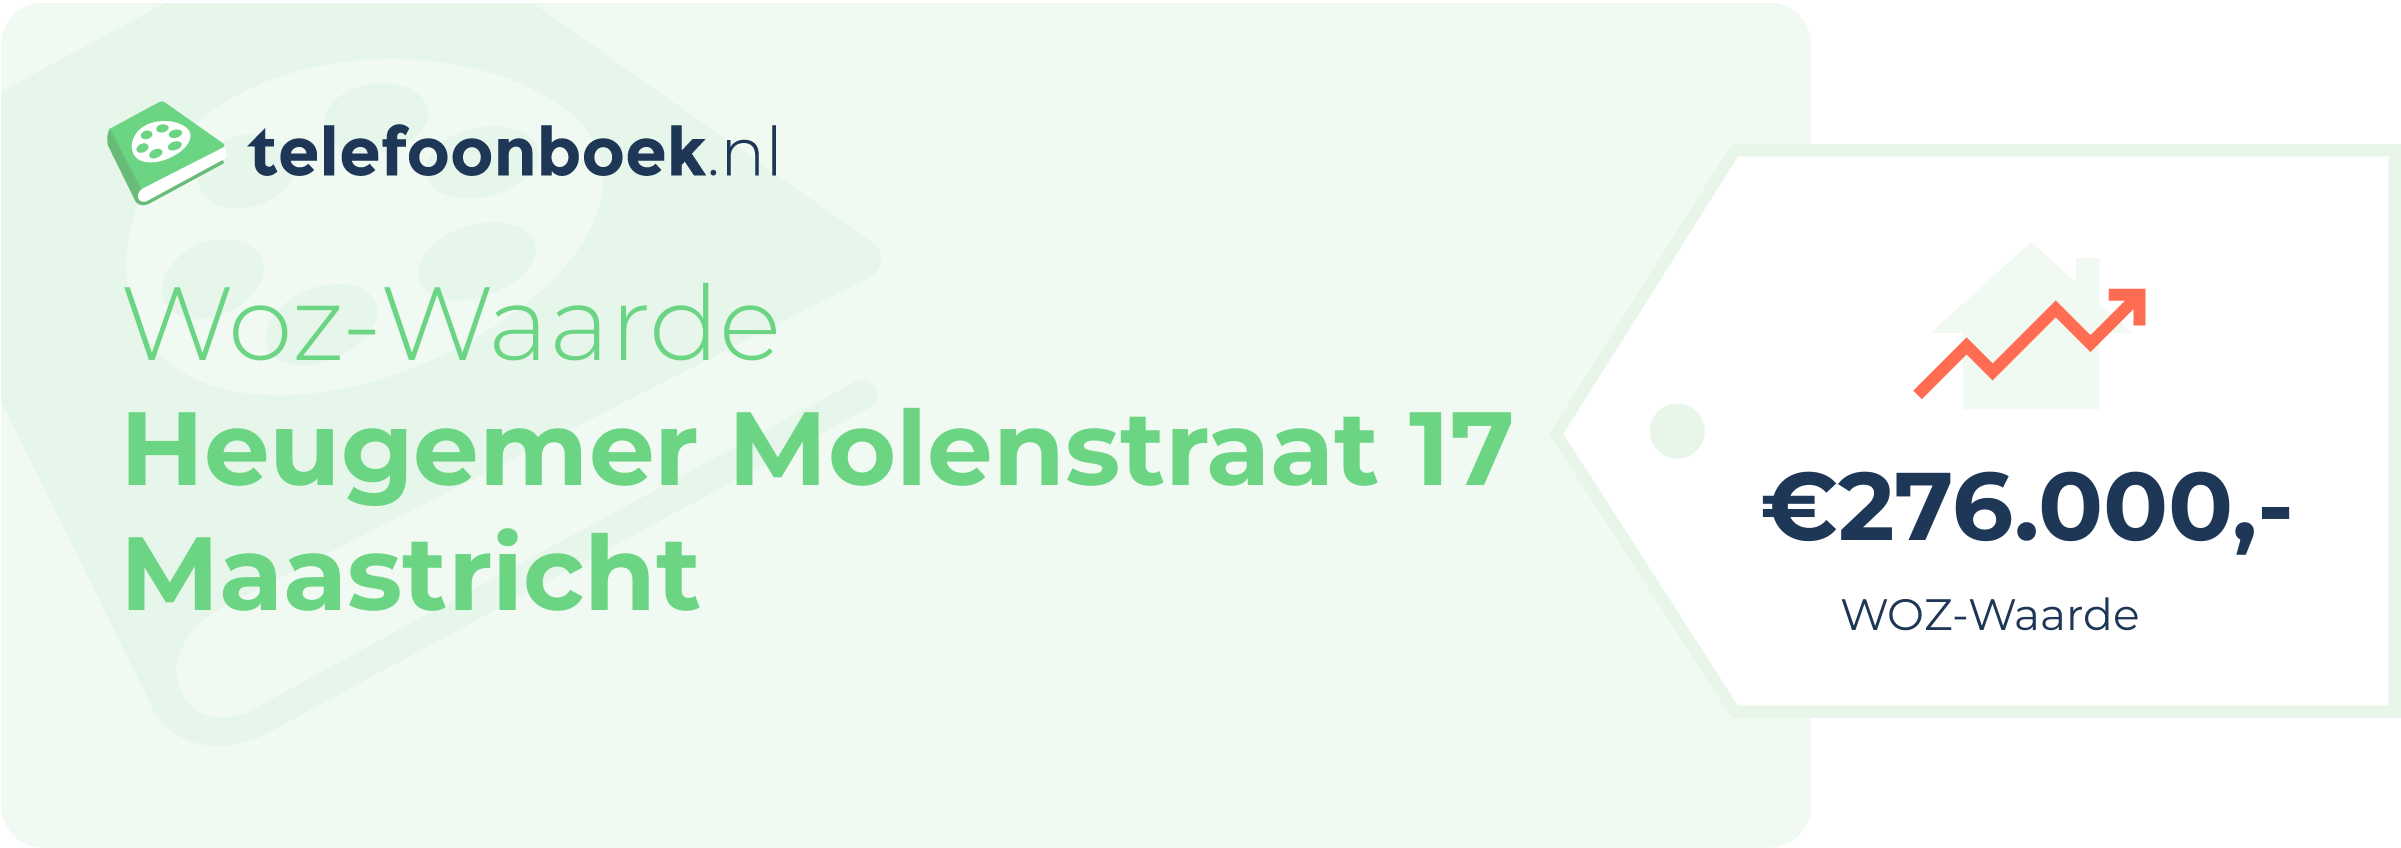 WOZ-waarde Heugemer Molenstraat 17 Maastricht